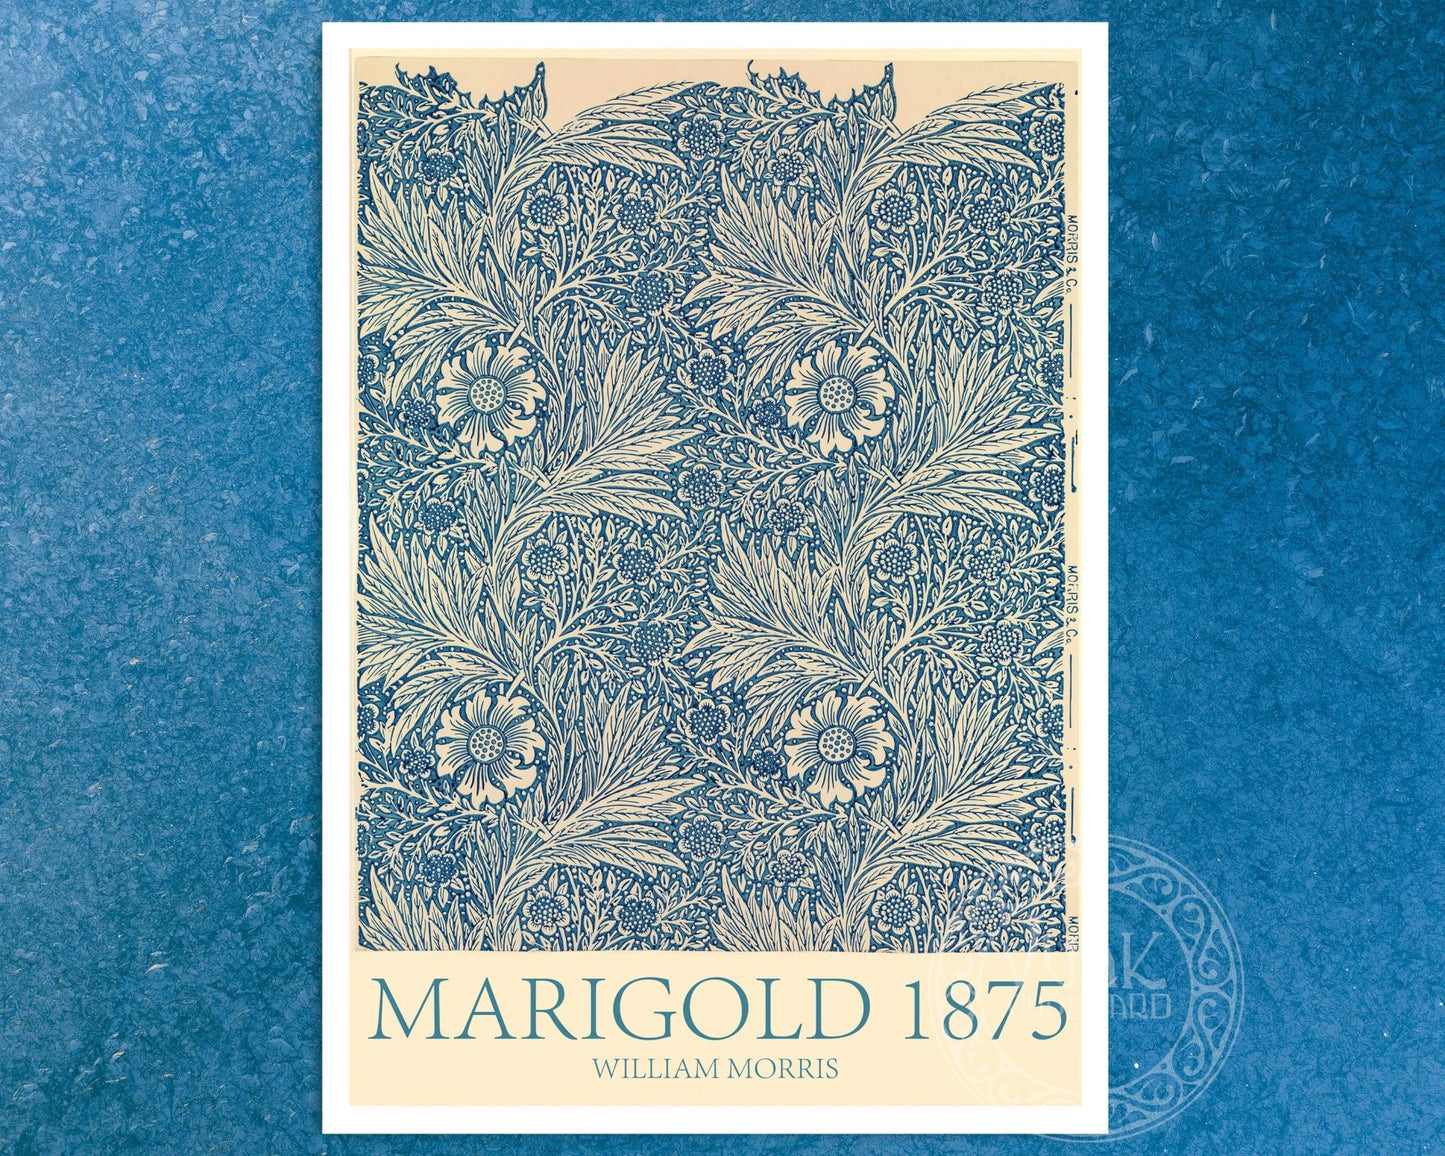 William Morris "Marigold" (c.1875) - Mabon Gallery